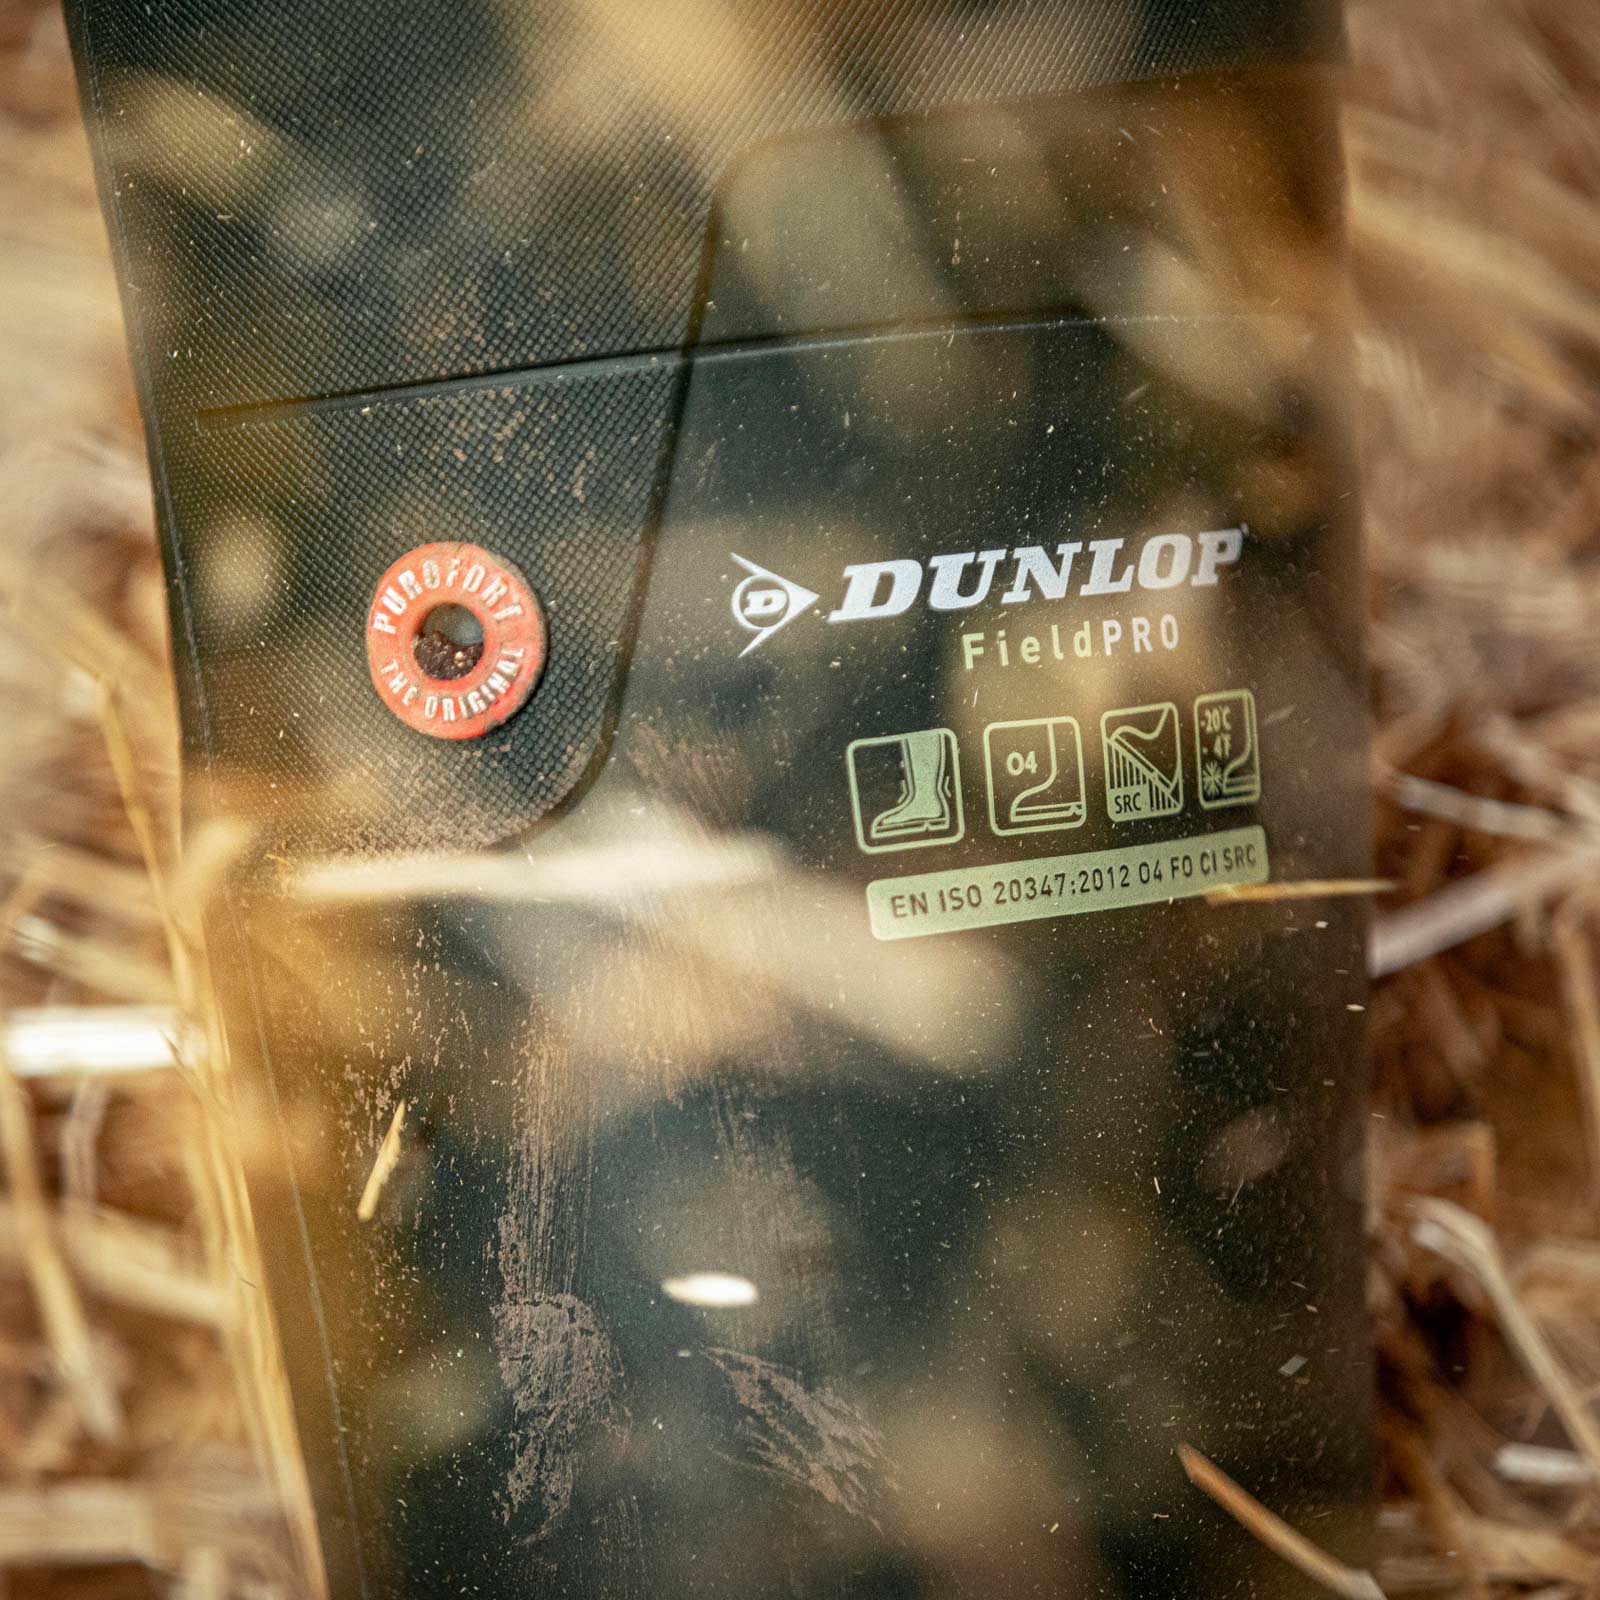 Dunlop Sicherheitsstiefel Purofort FieldPRO 42